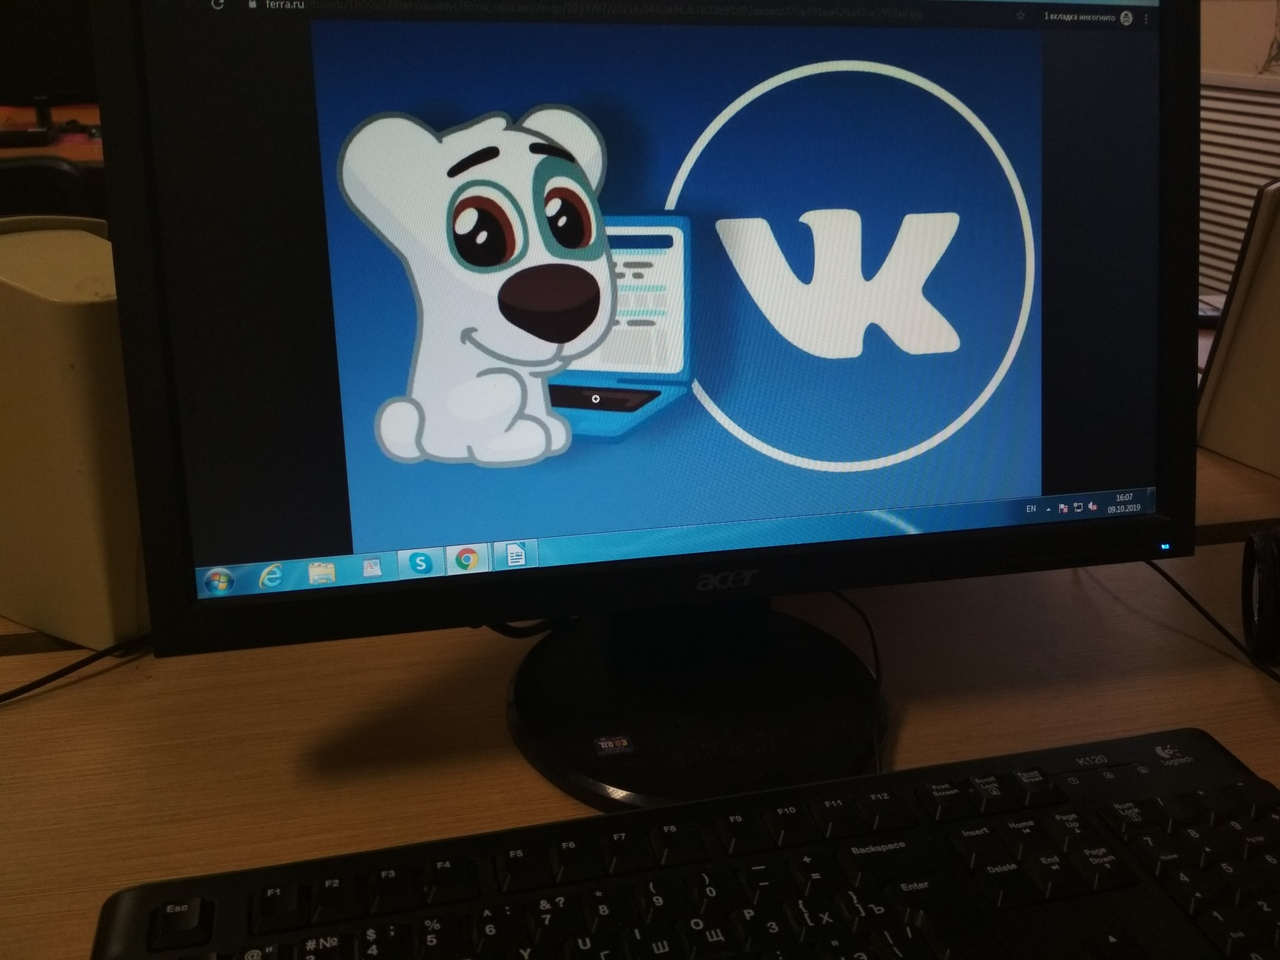 Именины ВКонтакте: чем владимирцы обожают заниматься в социальной сети